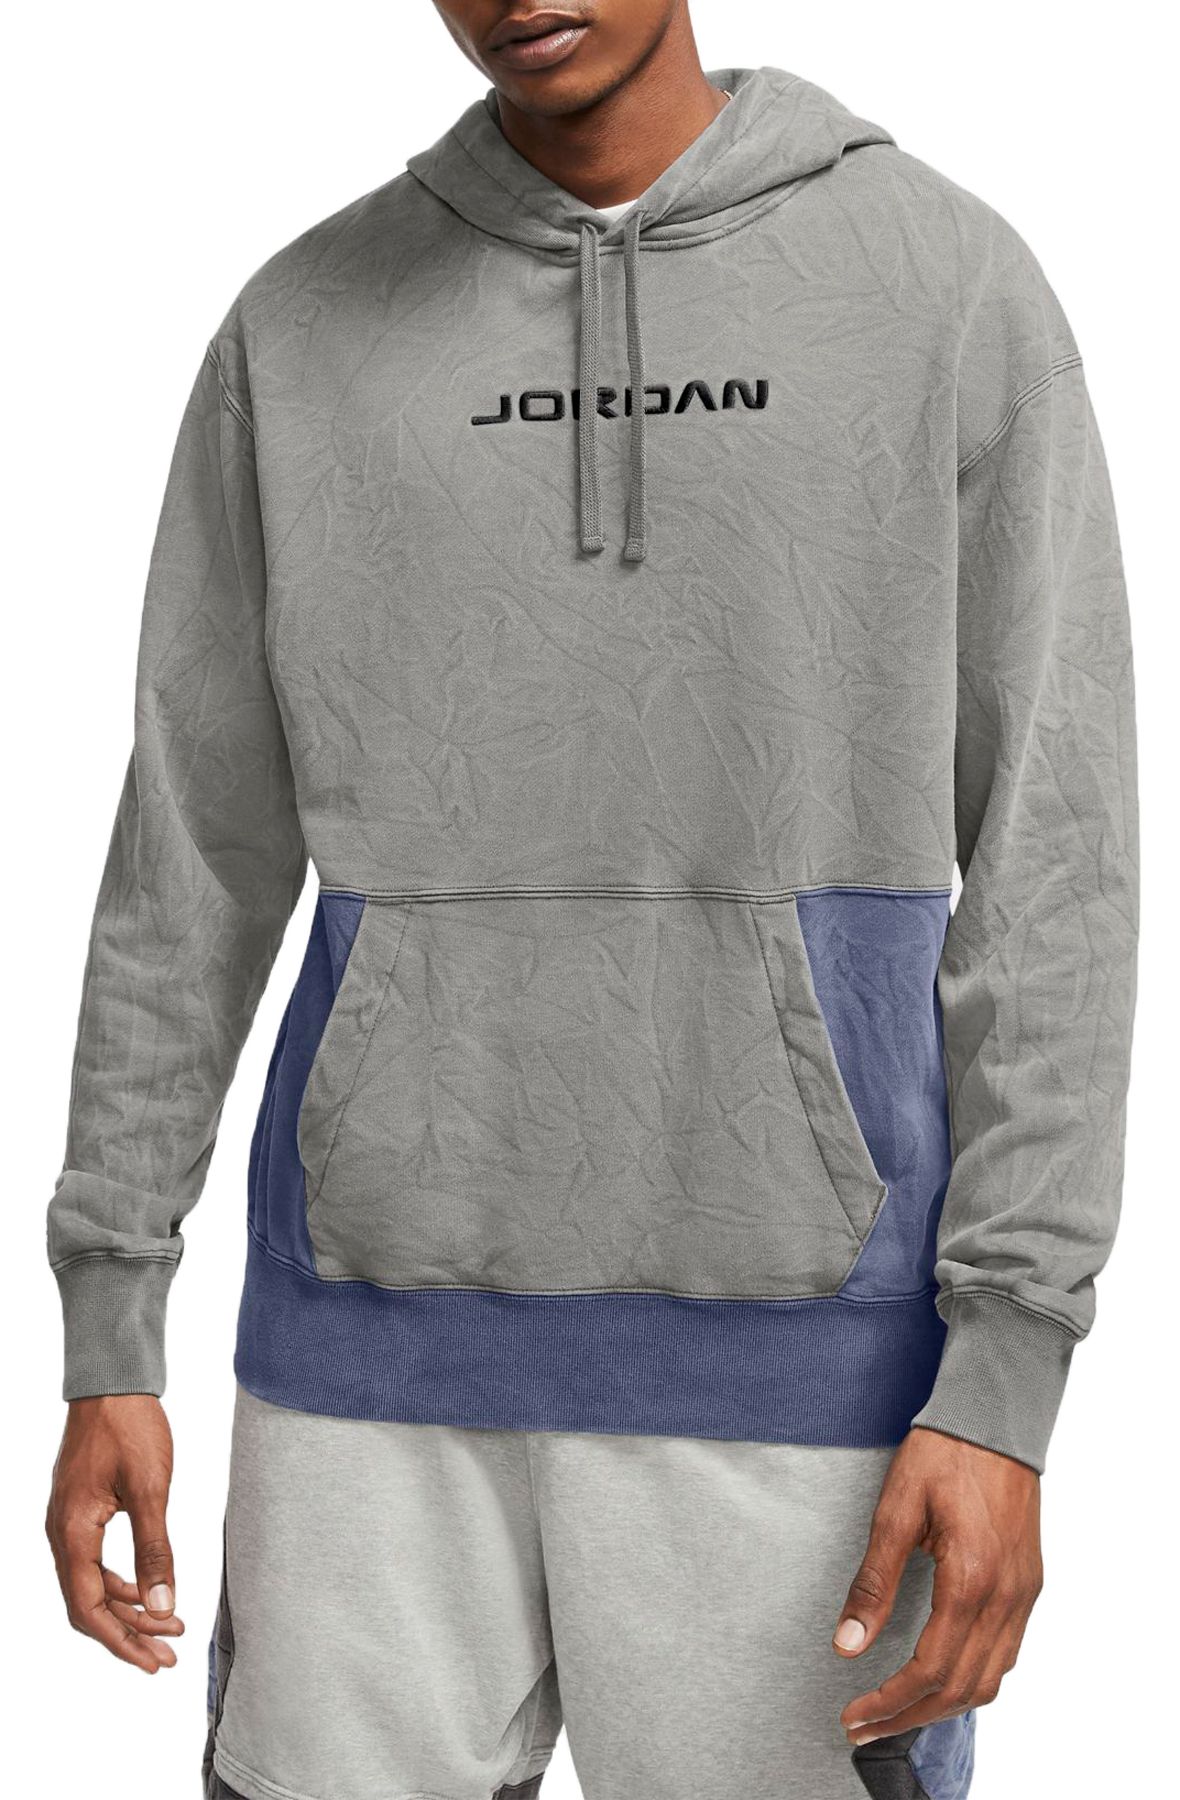 jordan legacy hoodie